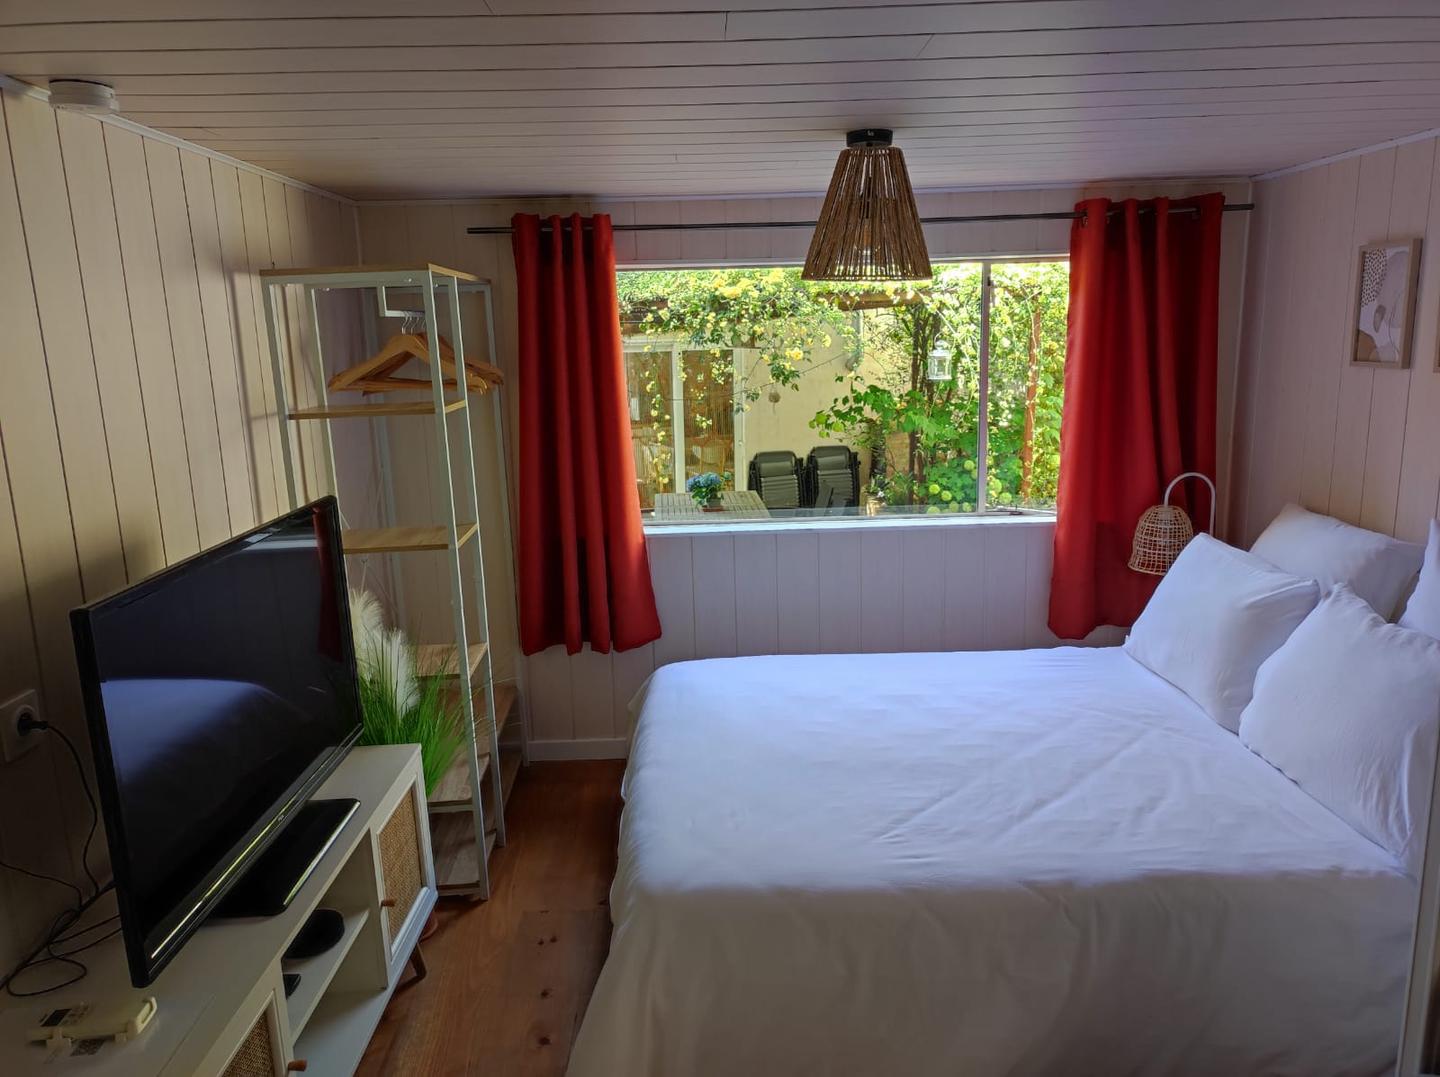 Hôte GreenGo: "La Casetta" Charmand bungalow tout confort - Image 3